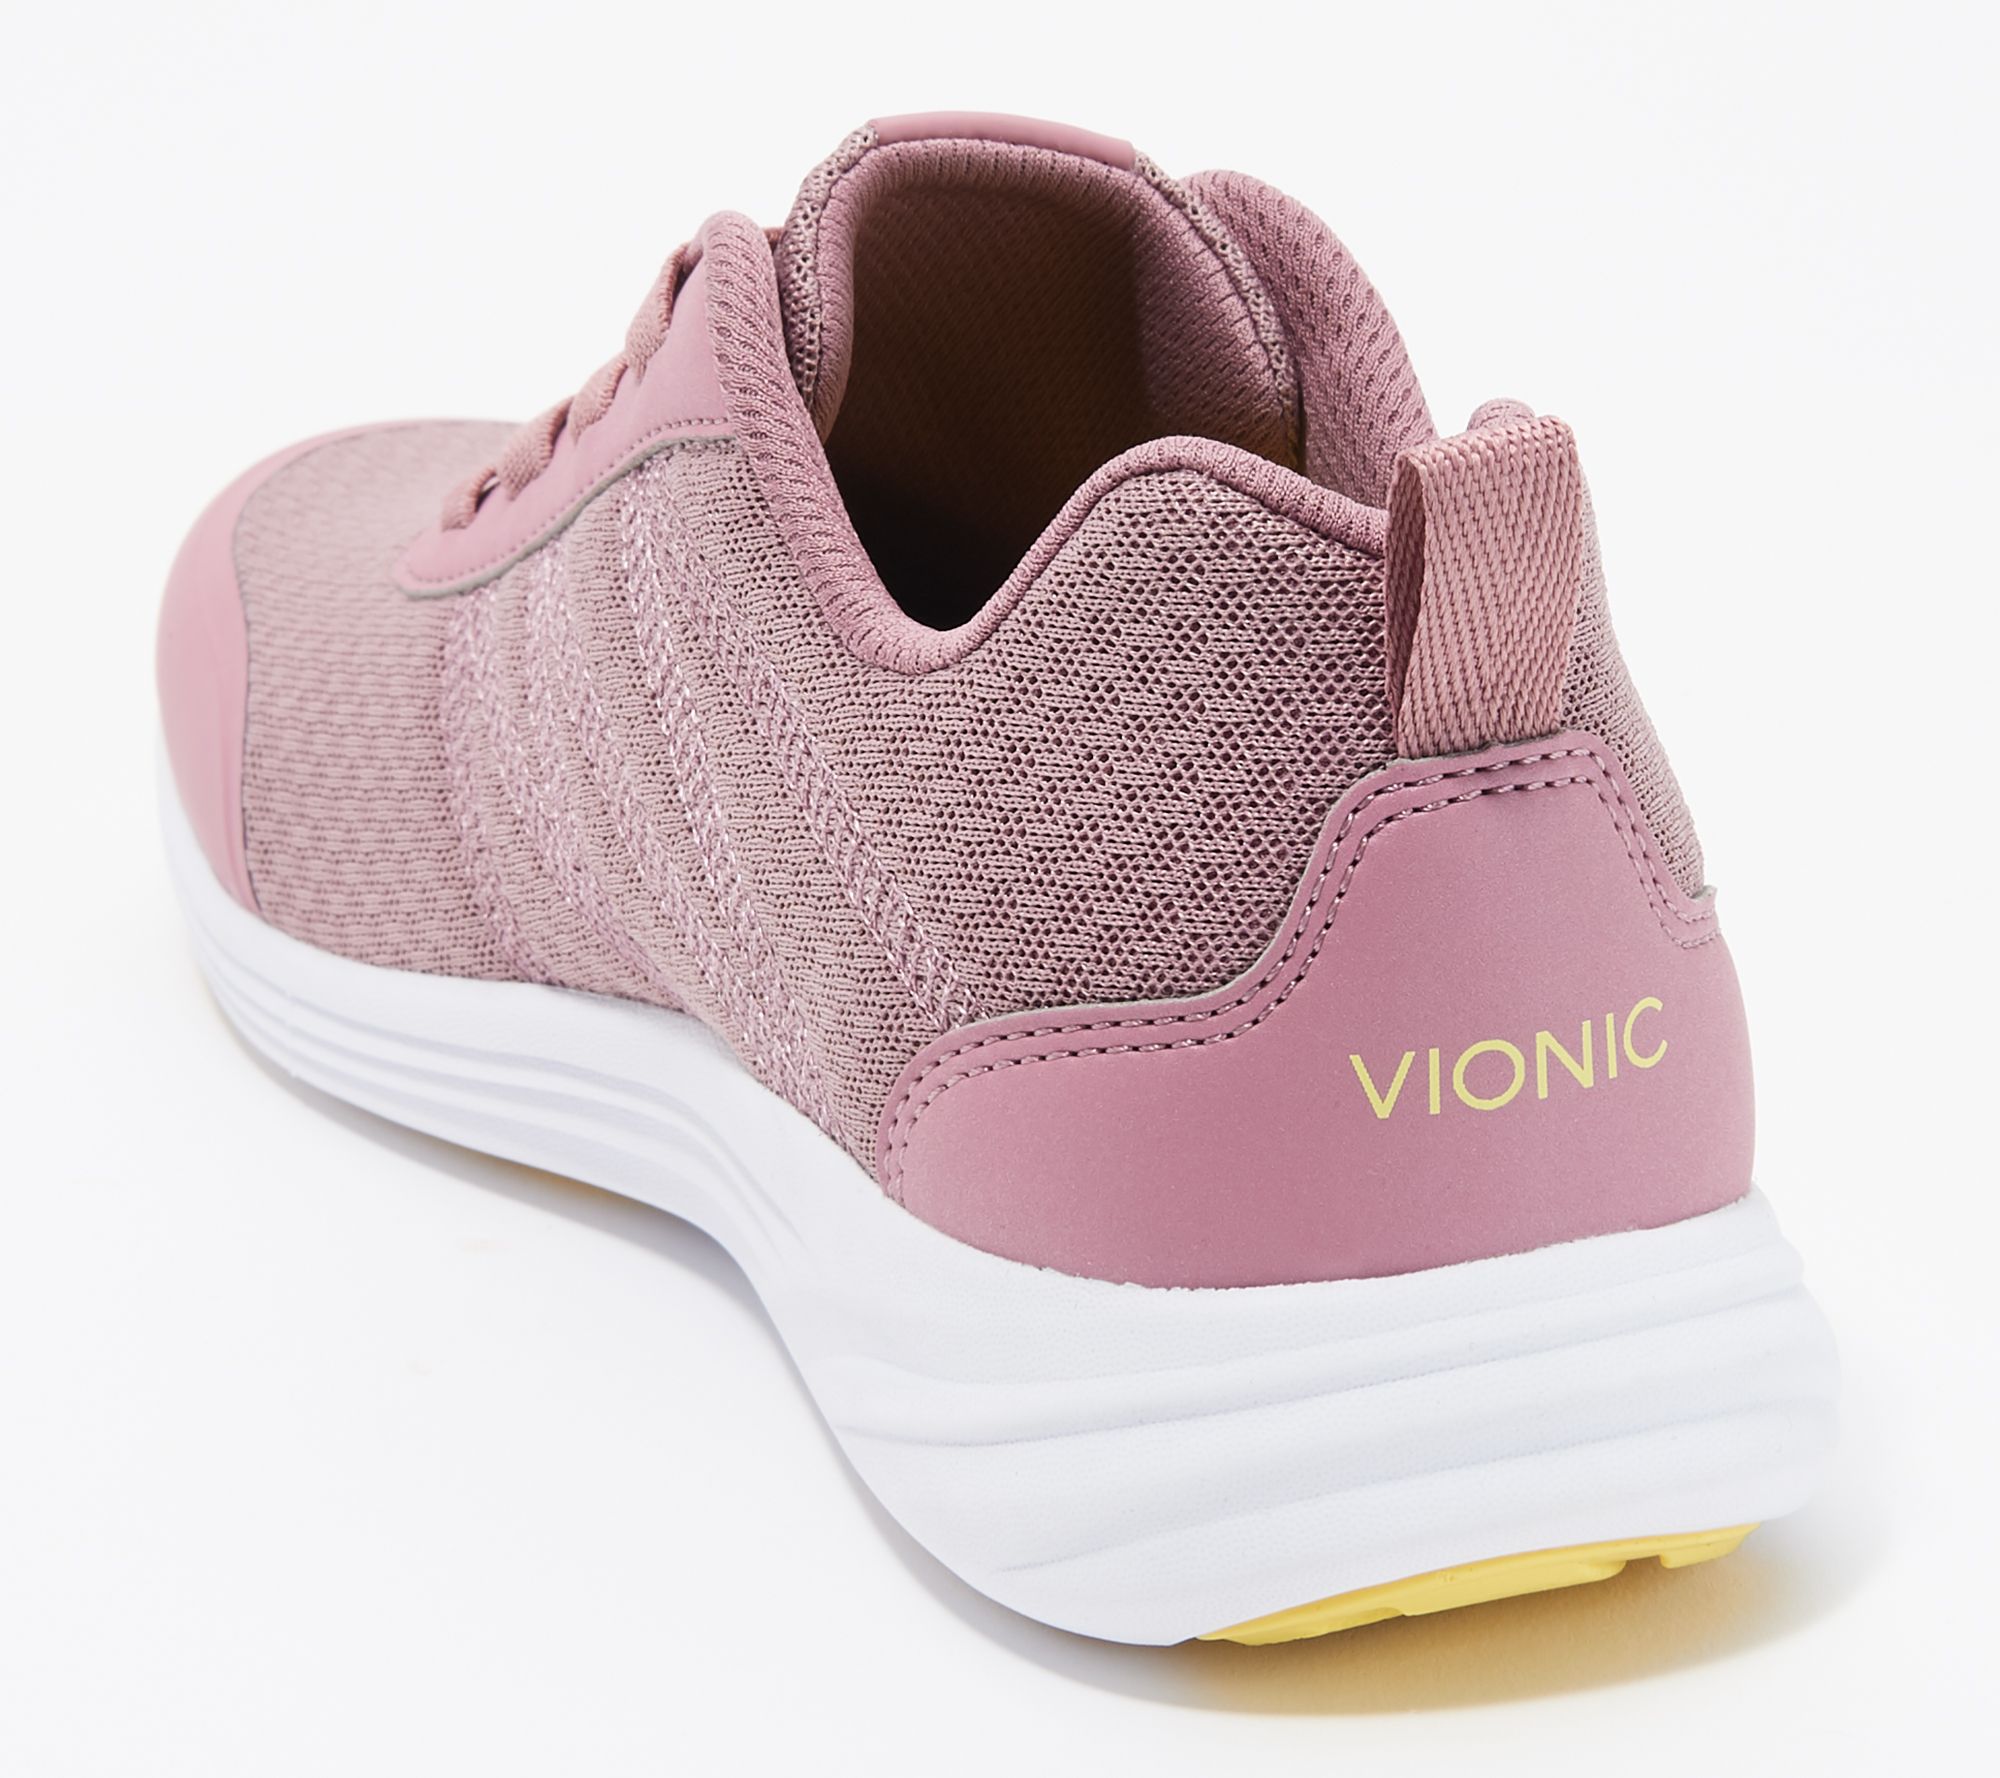 qvc vionic shoes clearance